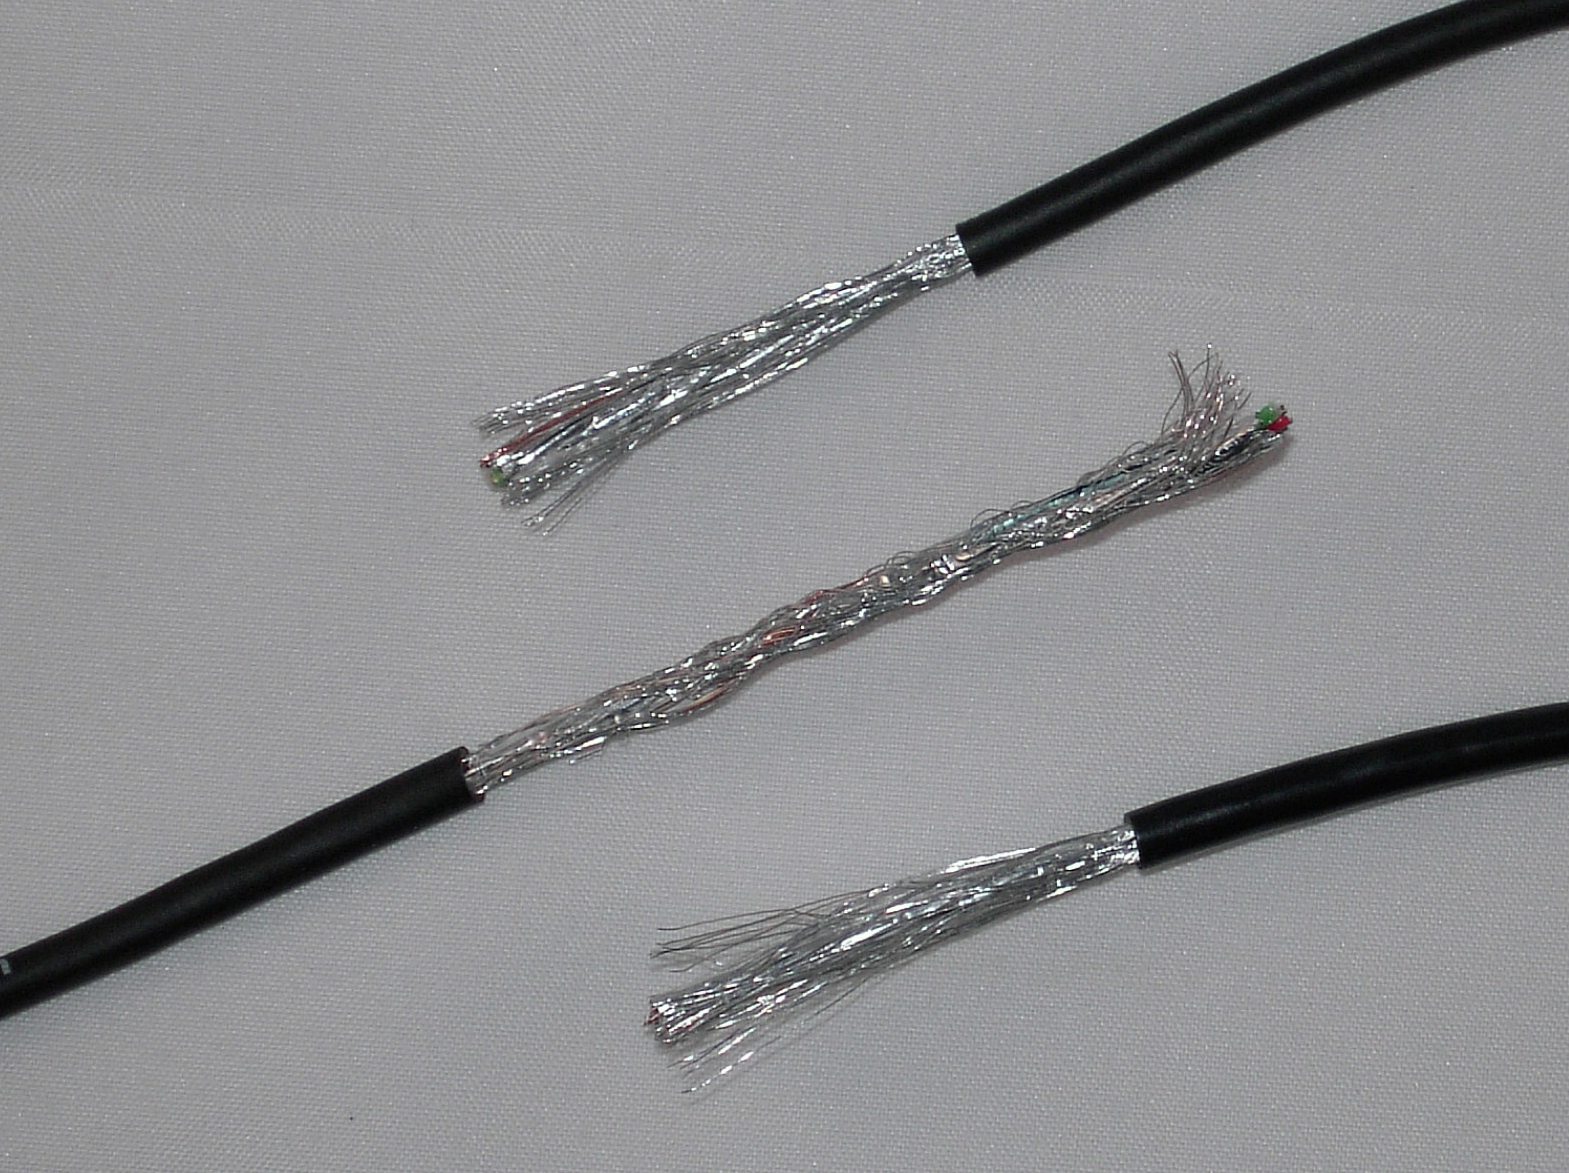 GS9000 Kabel